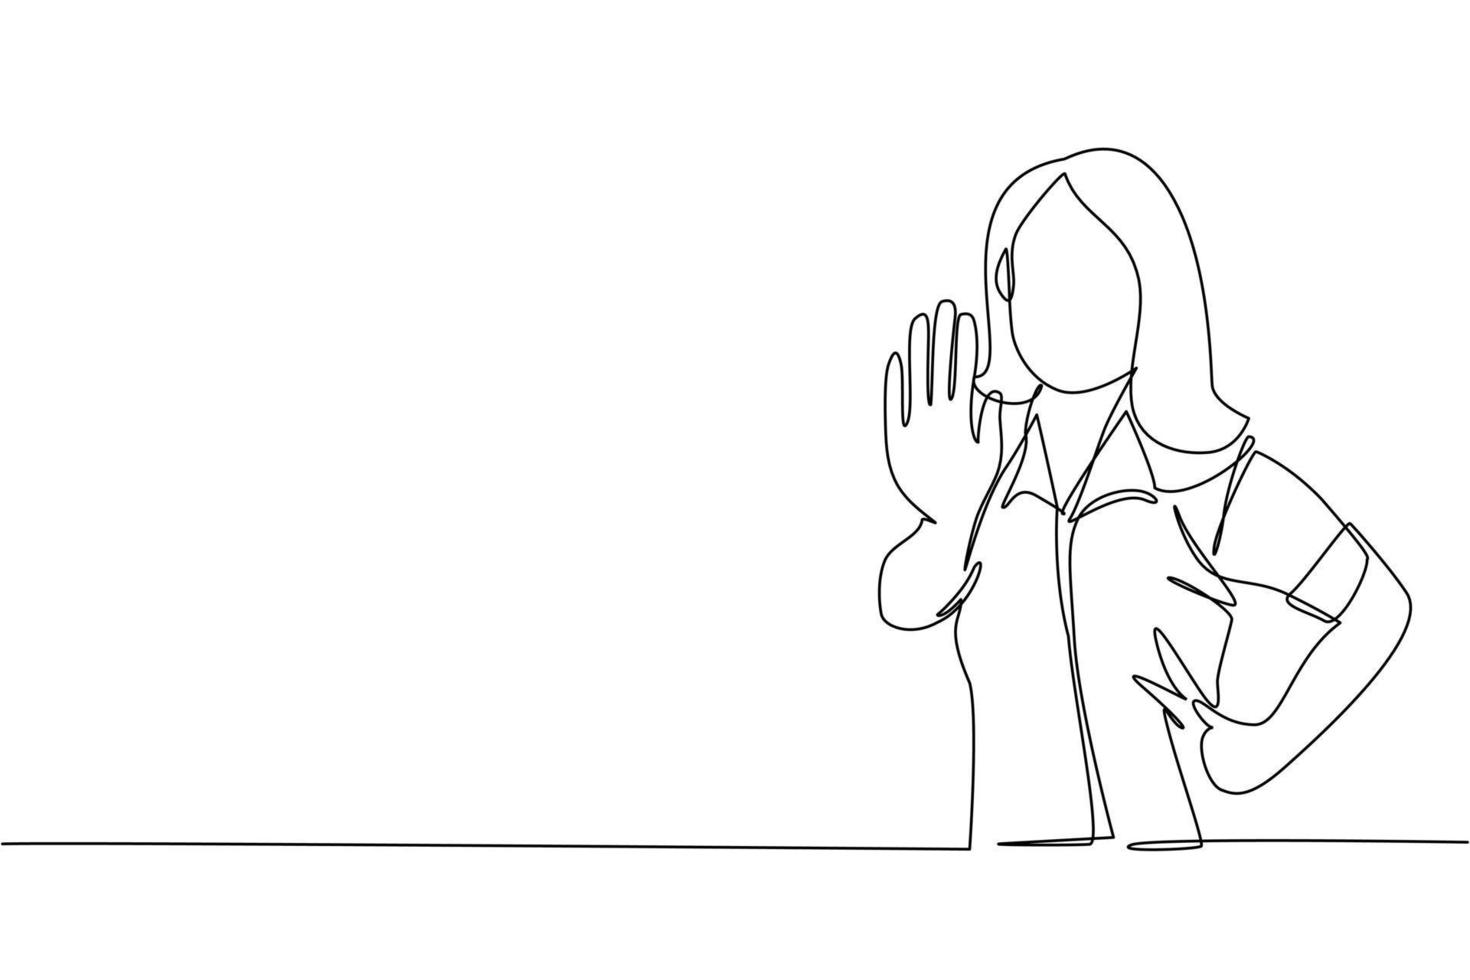 una sola línea continua dibujando a una joven empresaria que muestra la palma como señal de stop, estancia, retención o gesto de rechazo. emoción, concepto de lenguaje corporal. Ilustración de vector de diseño gráfico de dibujo de una línea dinámica